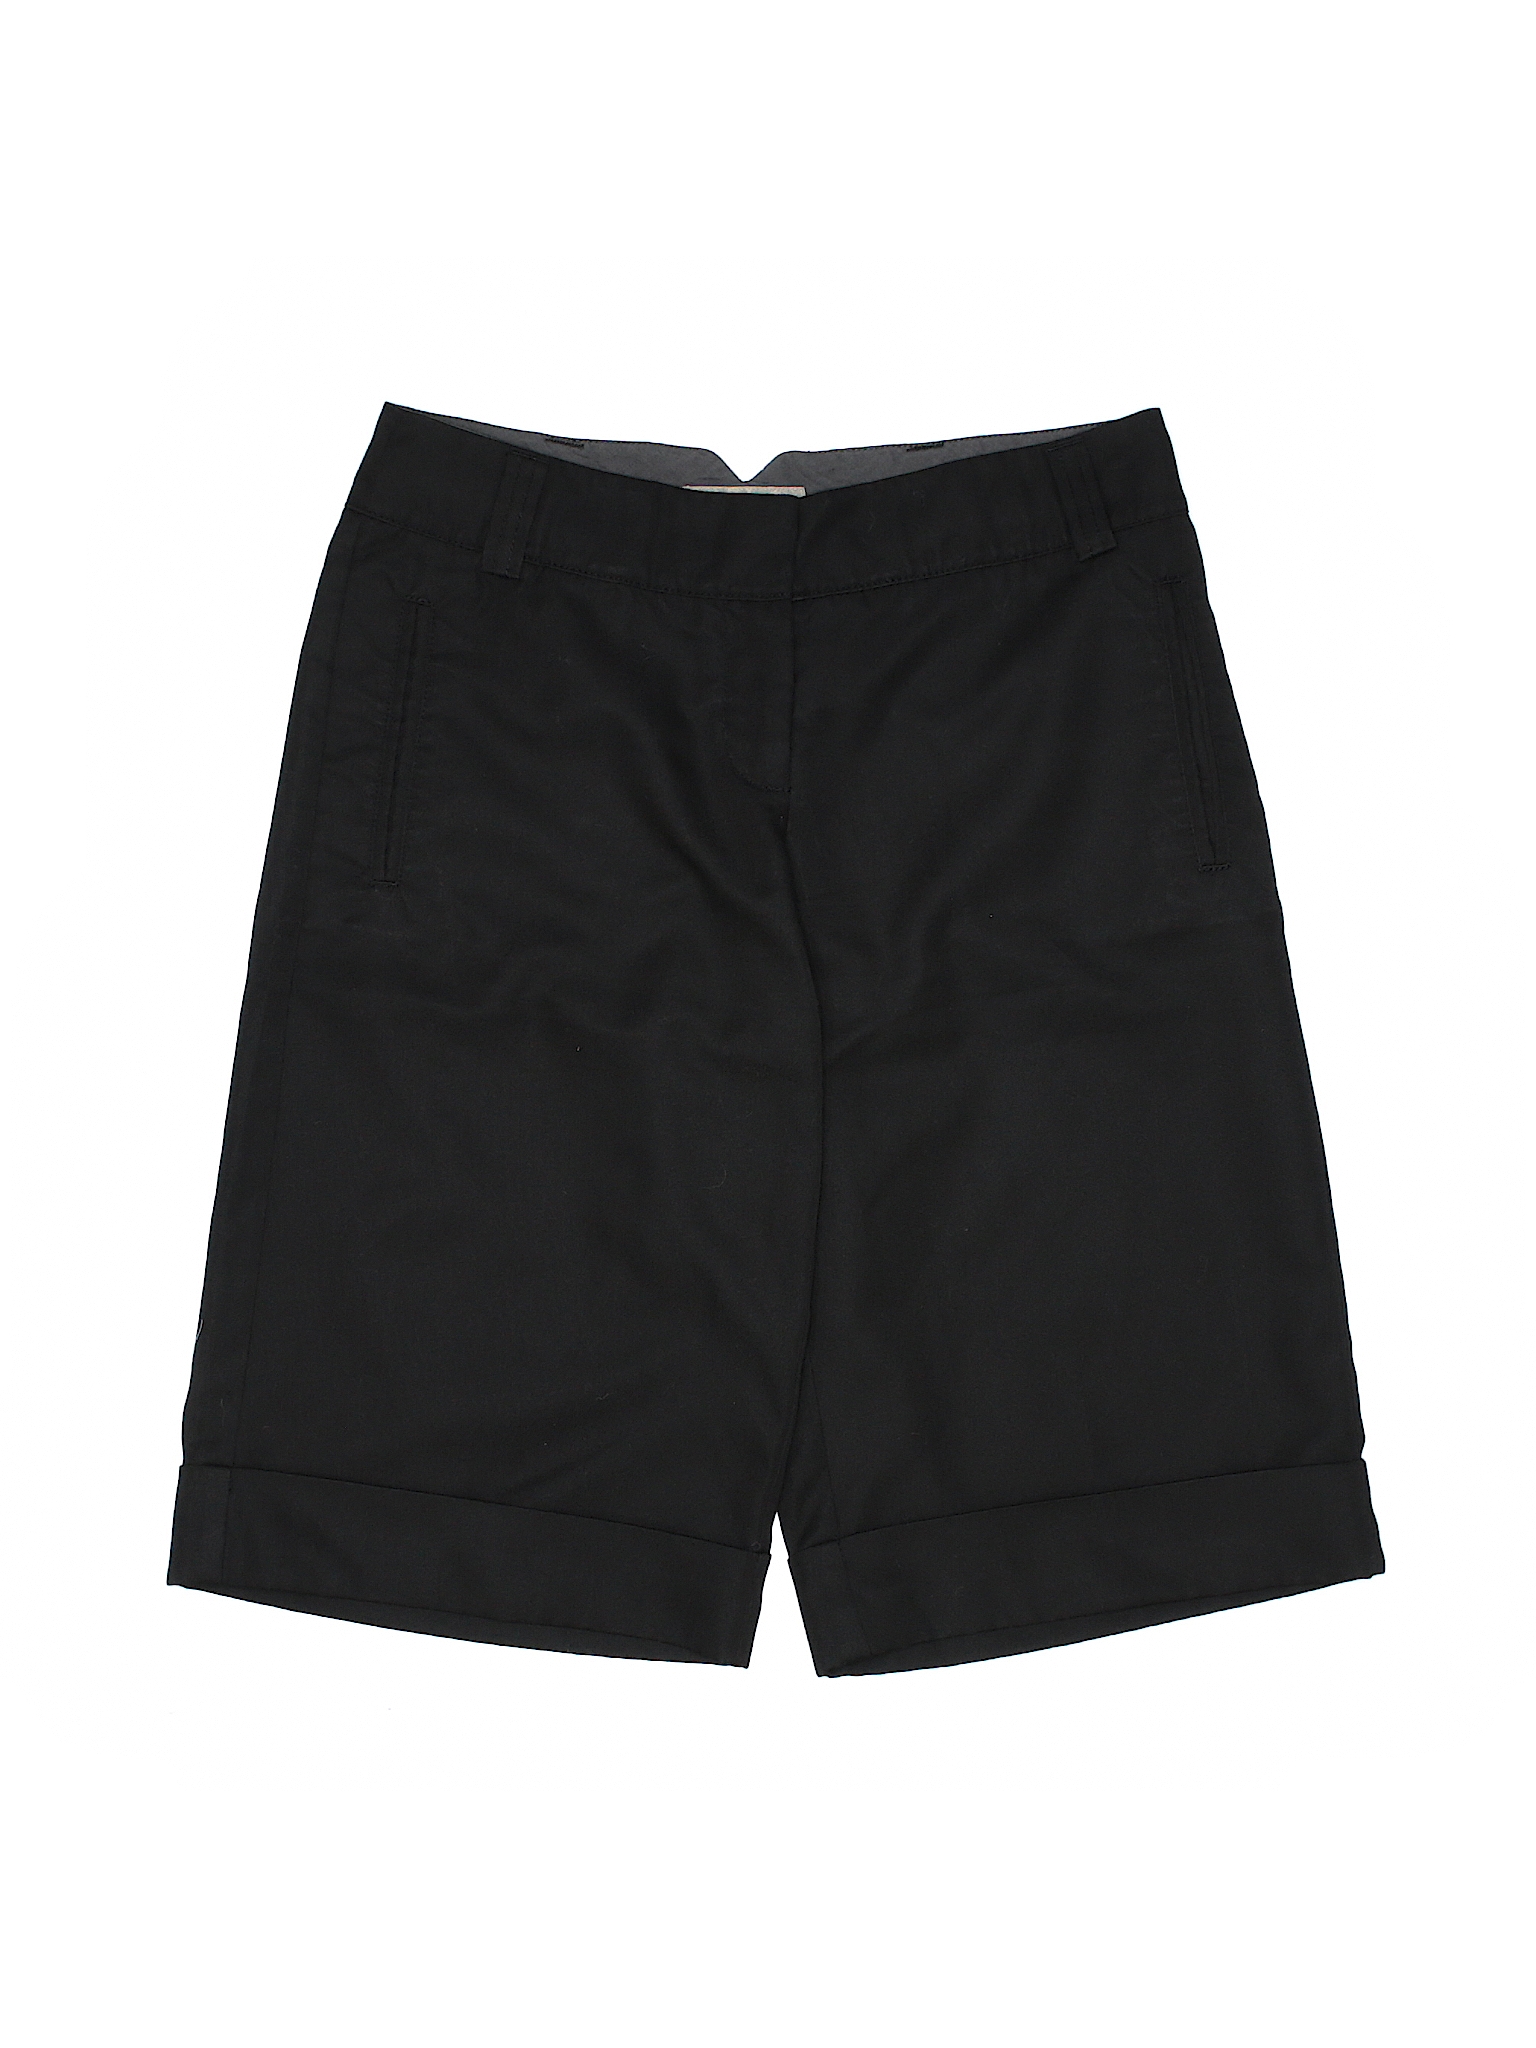 Charlie & Robin Solid Black Shorts Size 0 - 75% off | thredUP